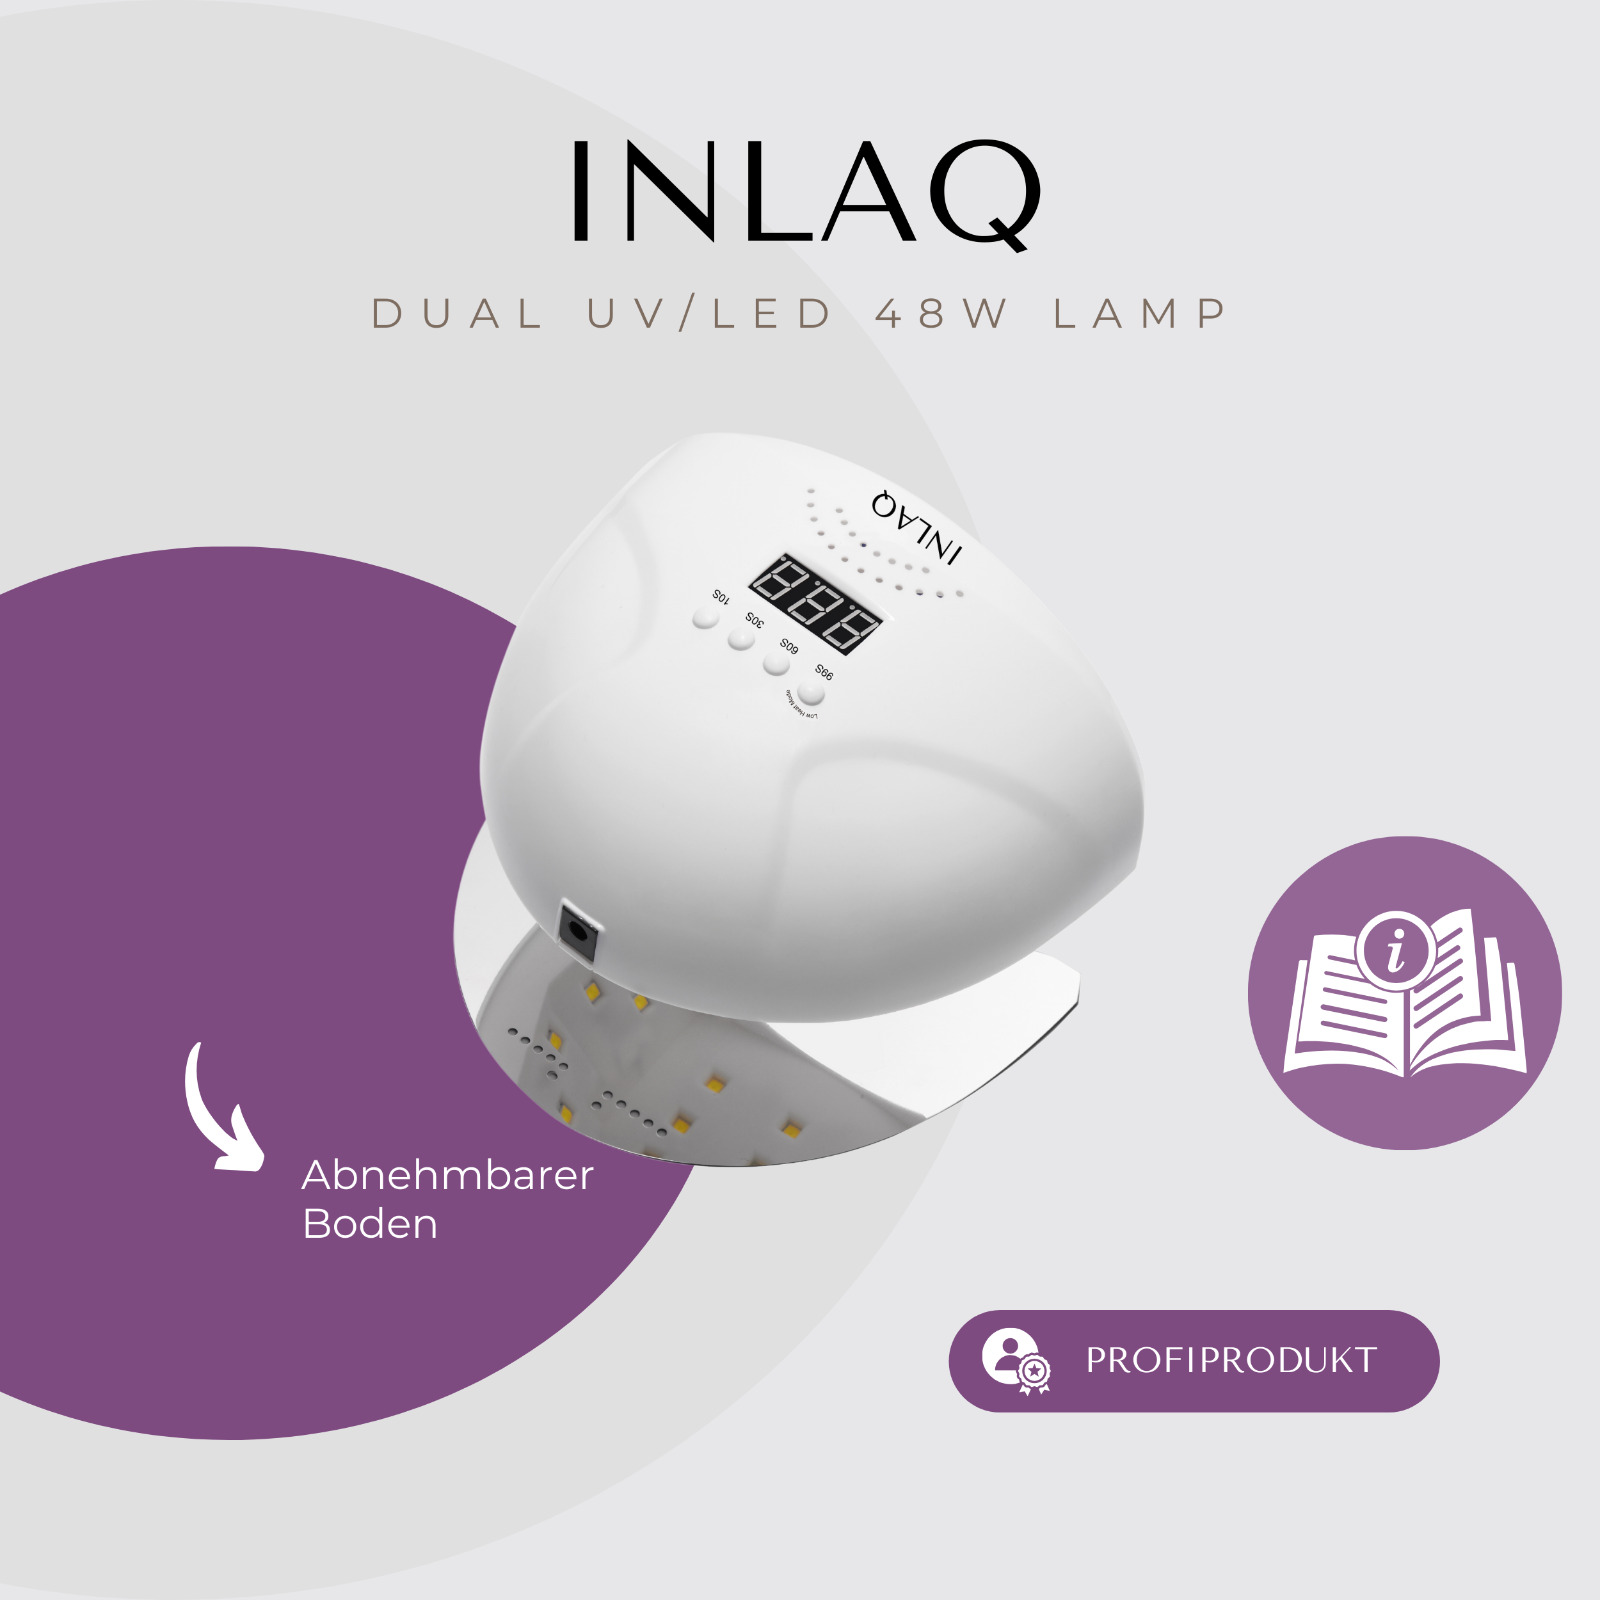 INLAQ Dual UVLED Hybrid-Nagellampe 48W - mit automatischem Sensor